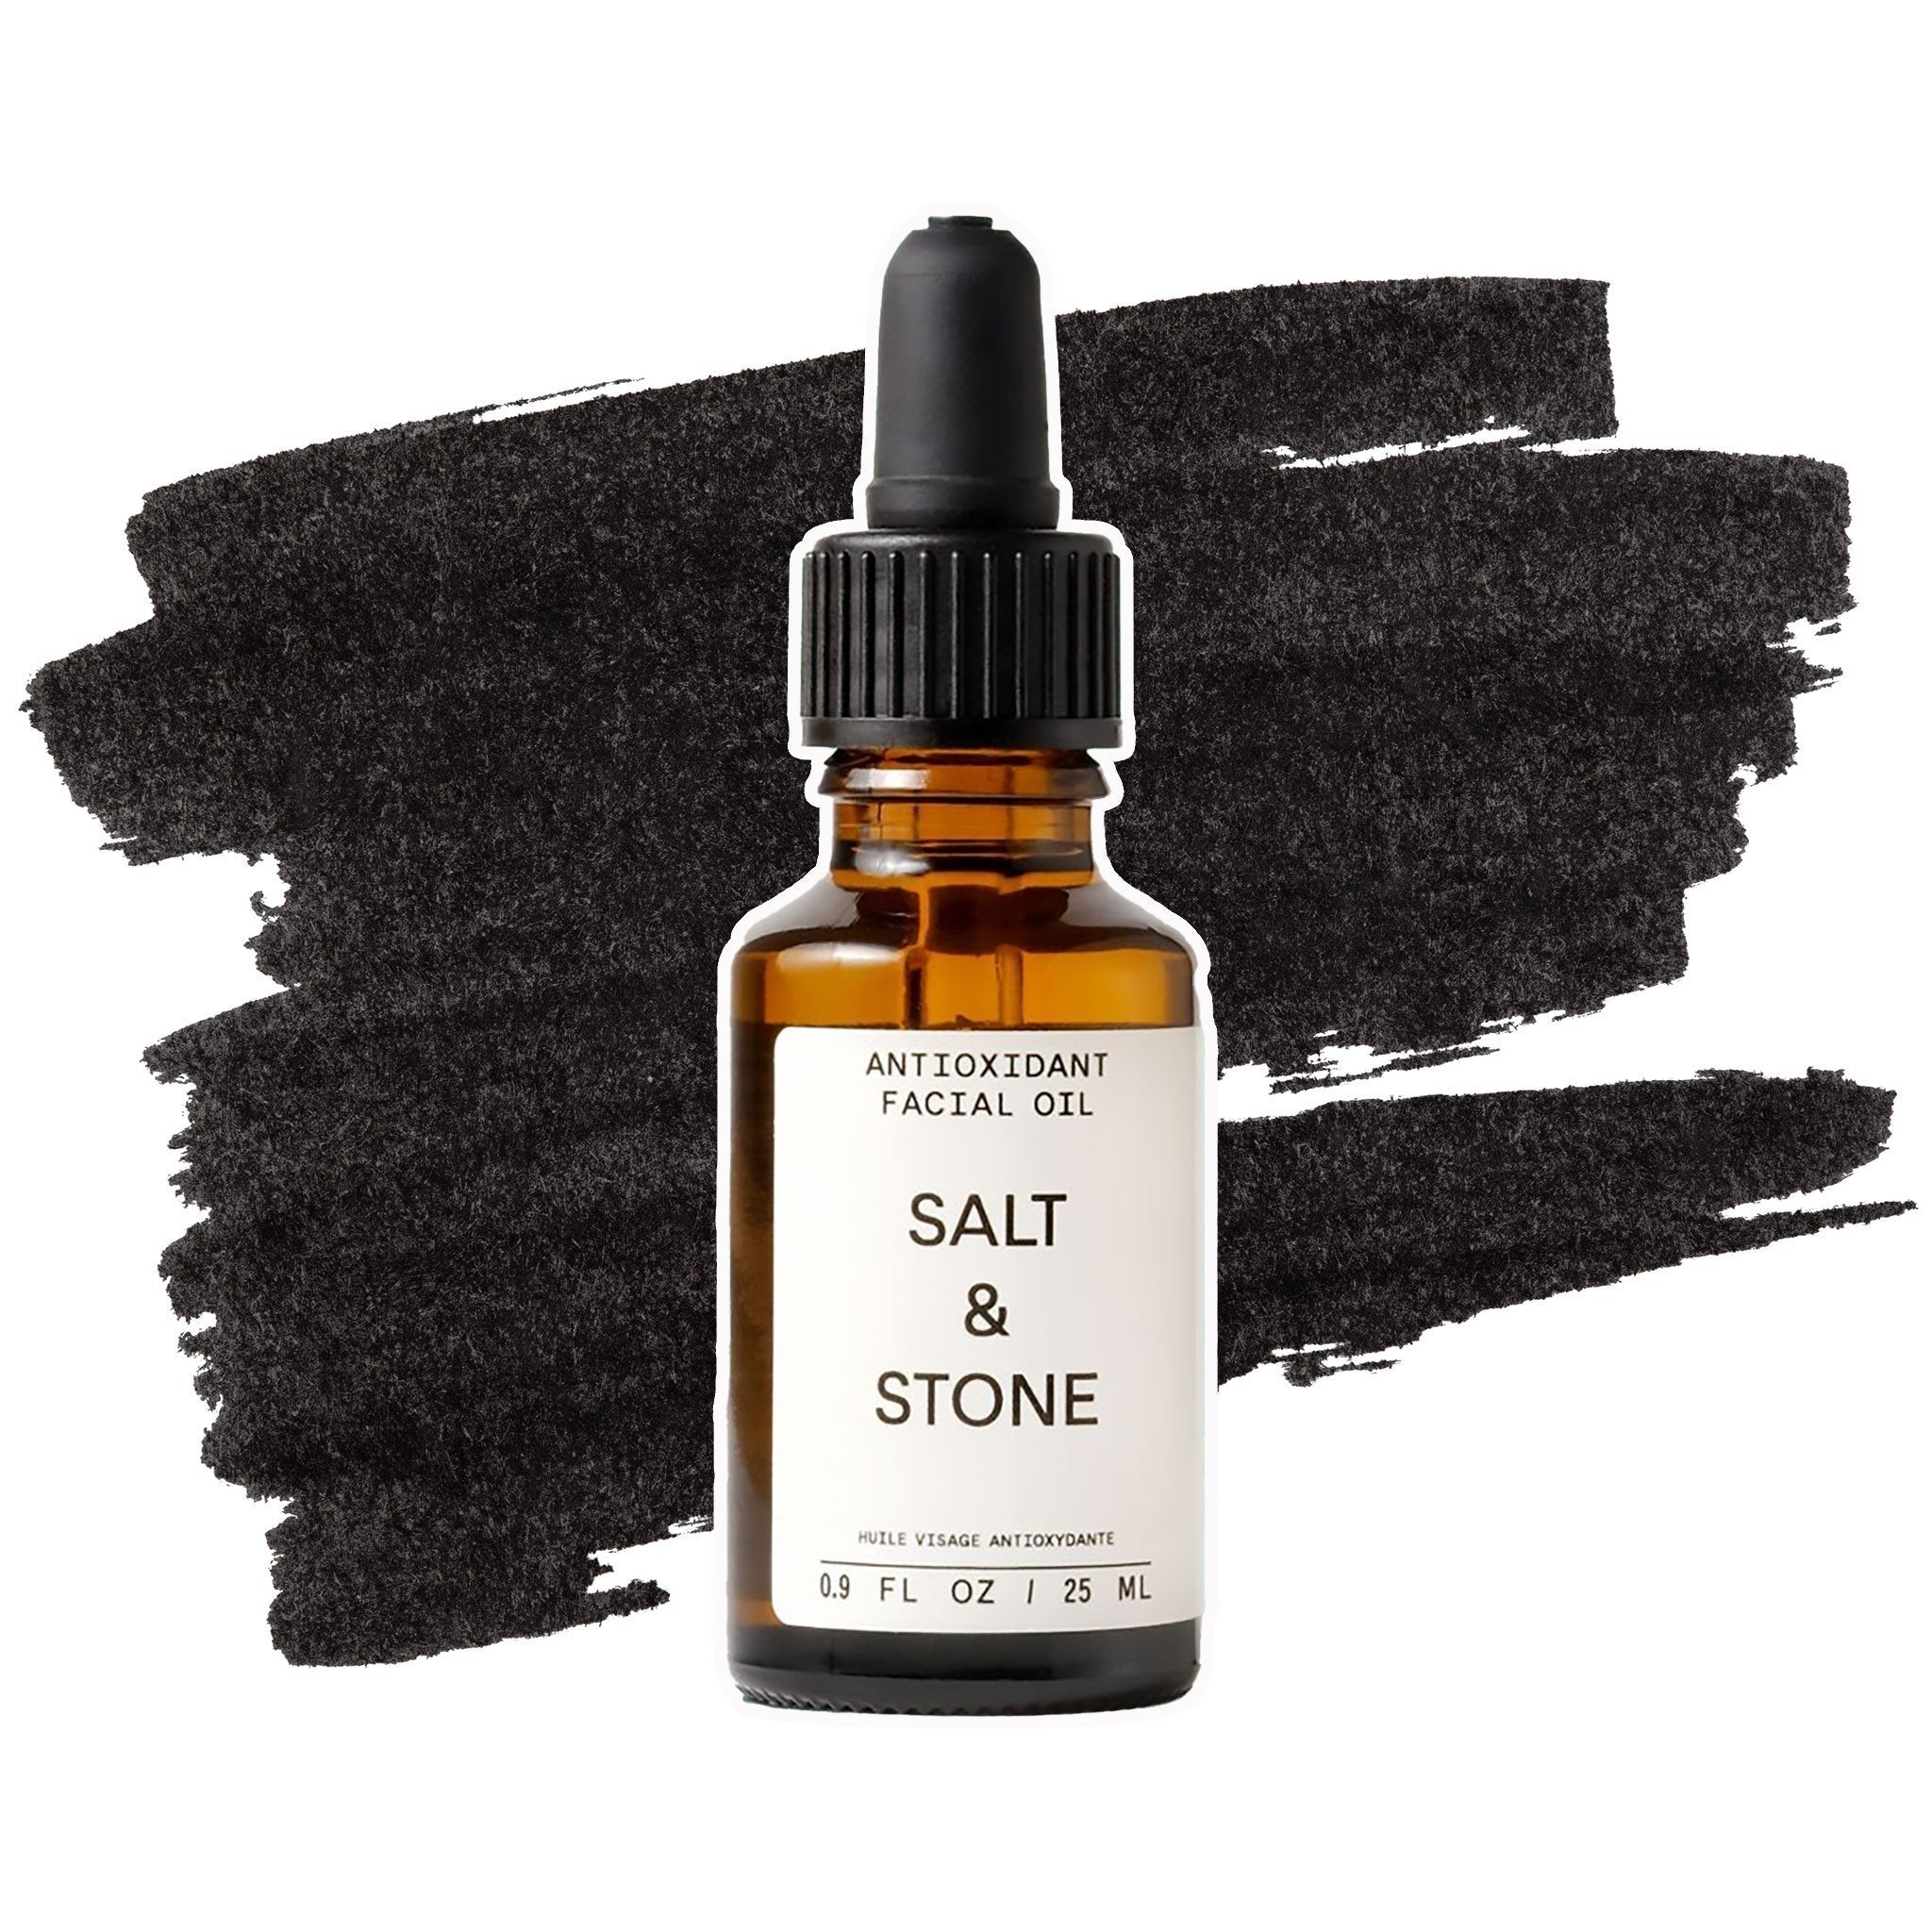 Sale e pietra | Olio antiossidante per il viso - lockenkopf